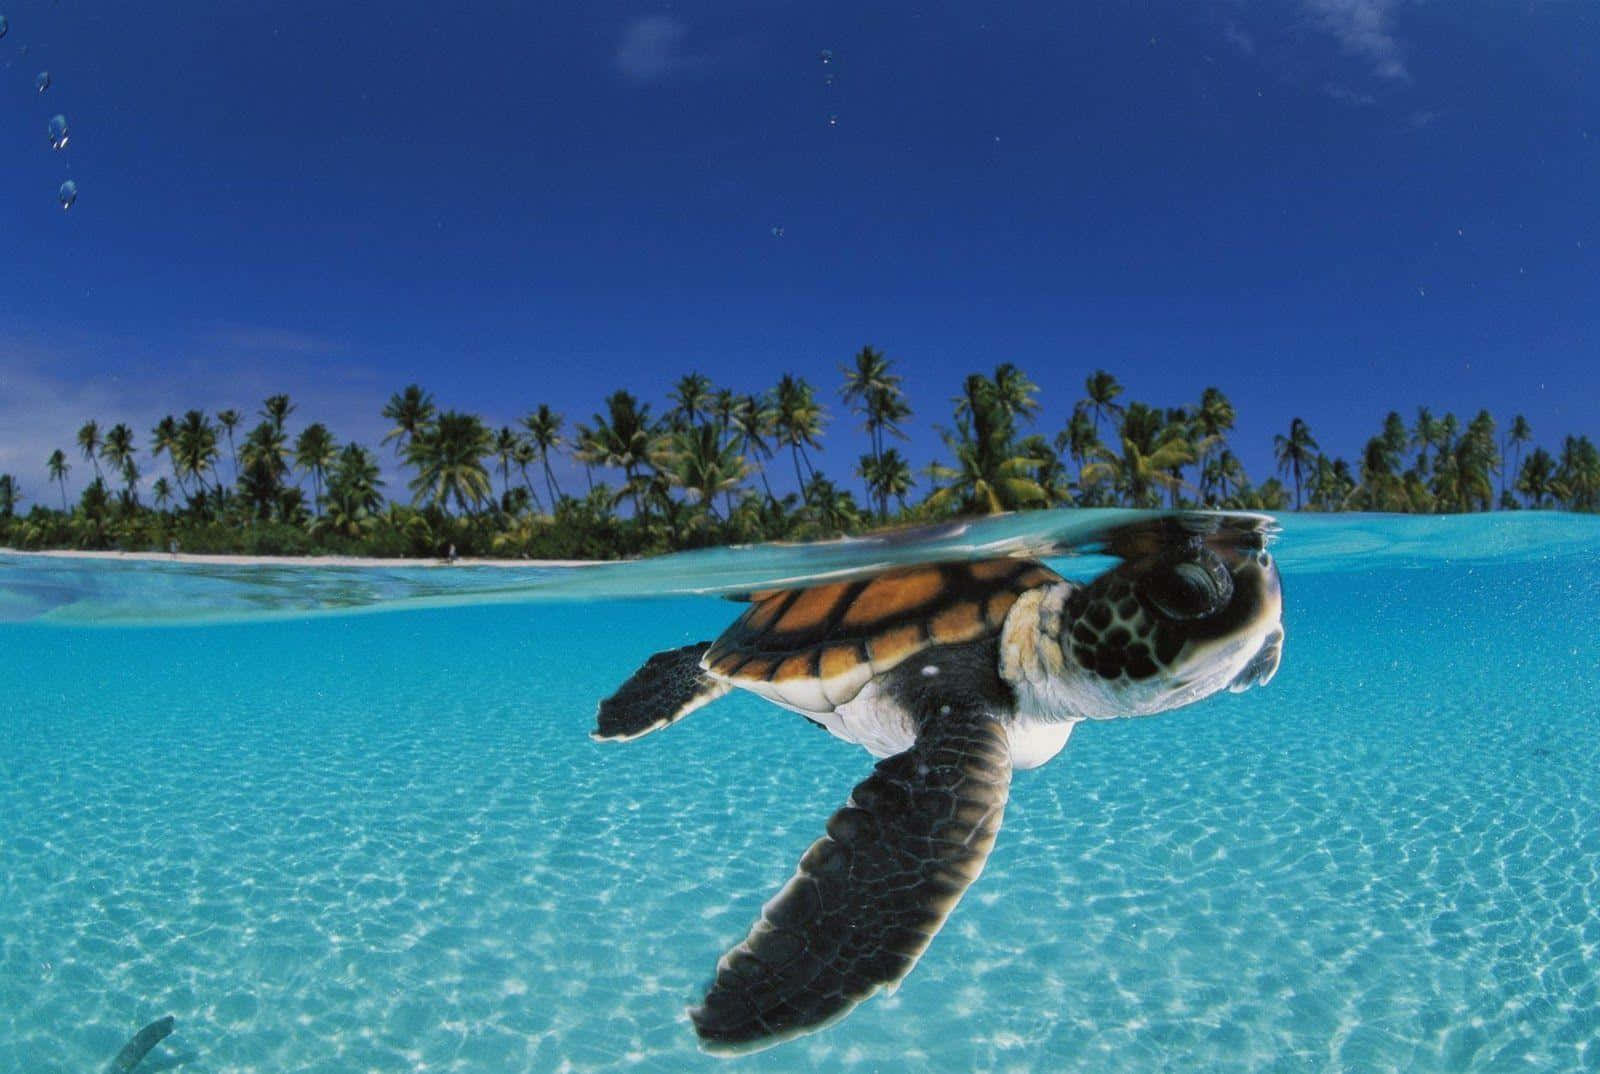 Einebaby-schildkröte Schwimmt In Klarem Wasser Mit Palmen.